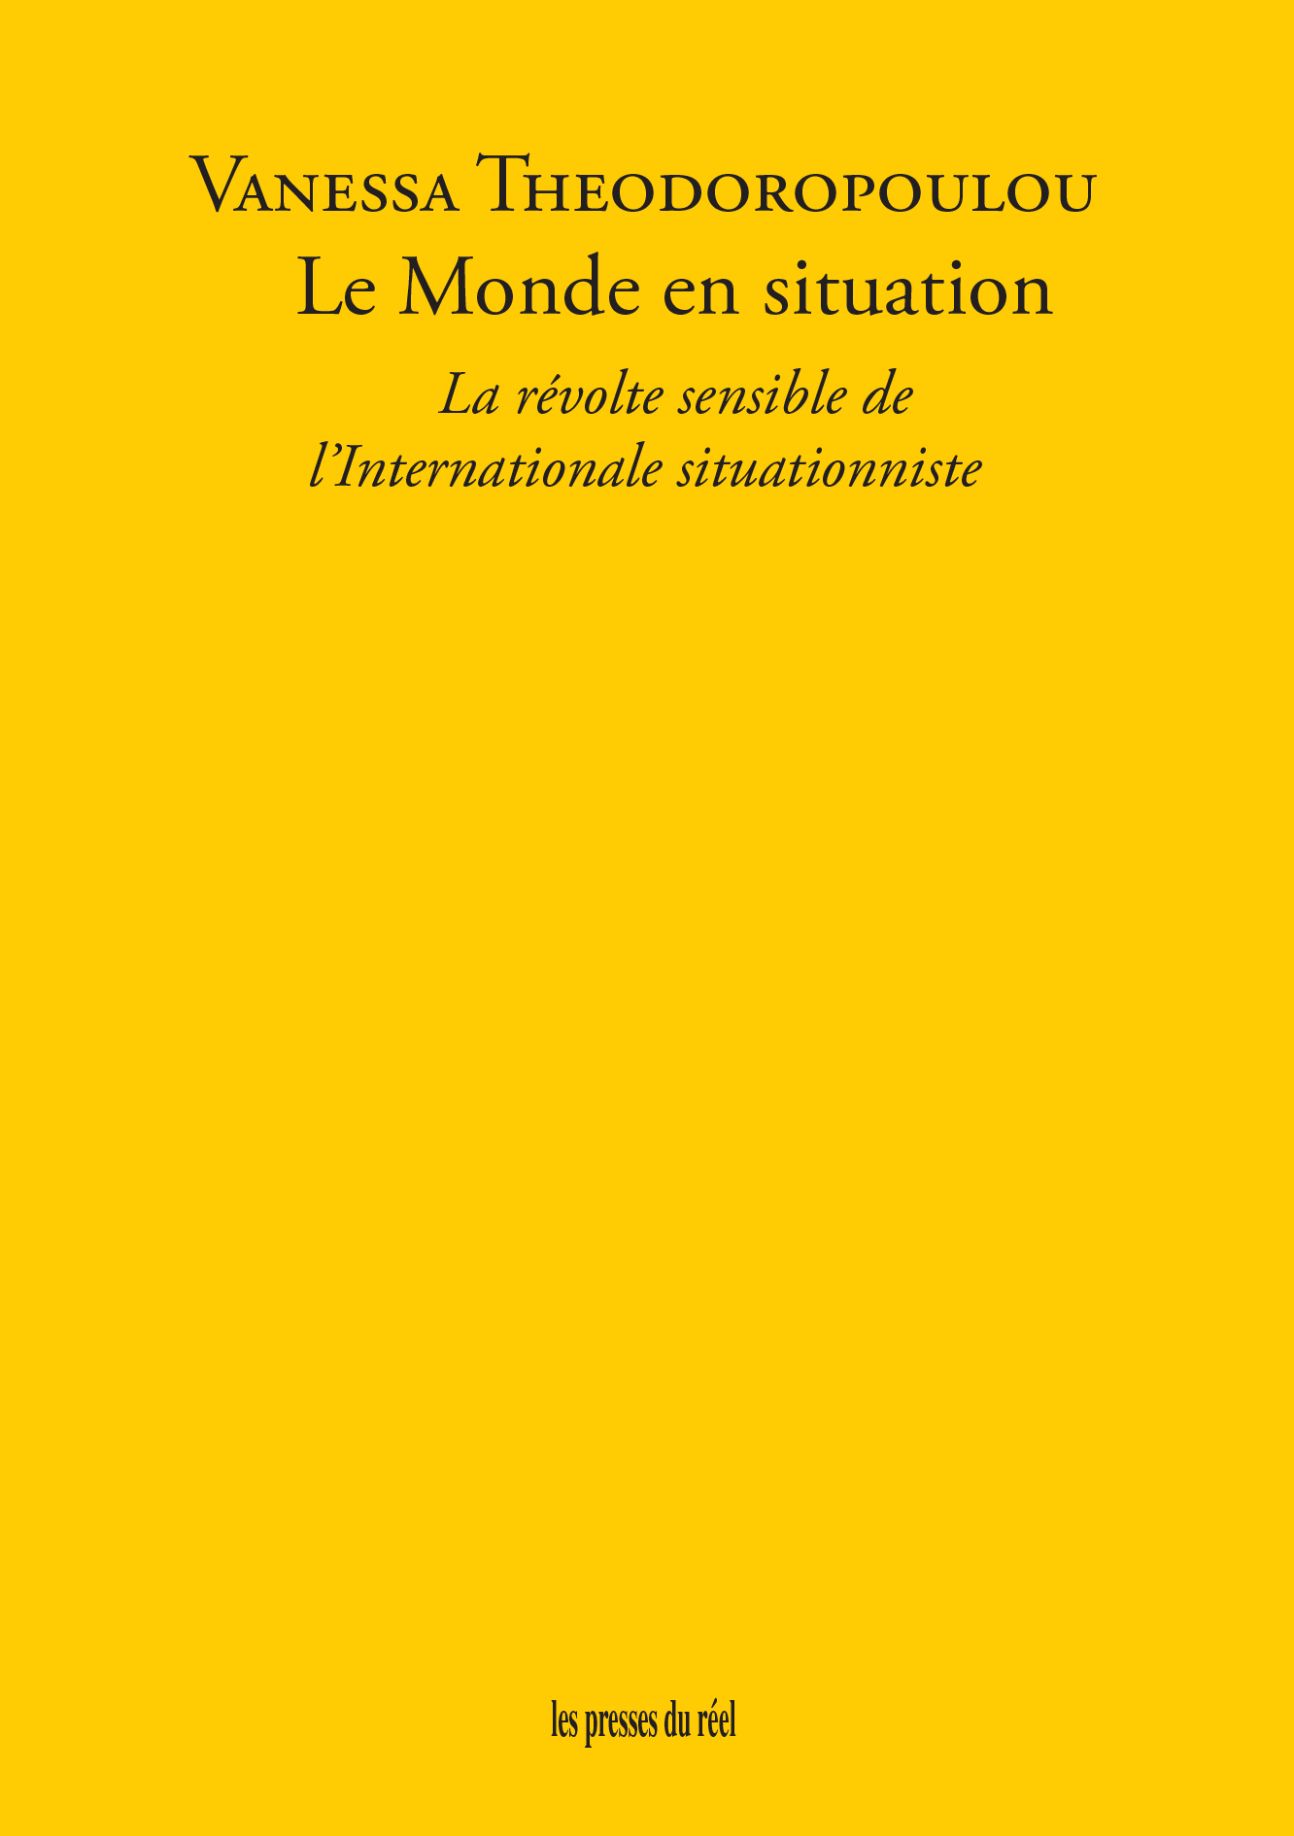 Vanessa Theodoropoulou, Le Monde en situation. La révolte sensible de l'Internationale situationniste